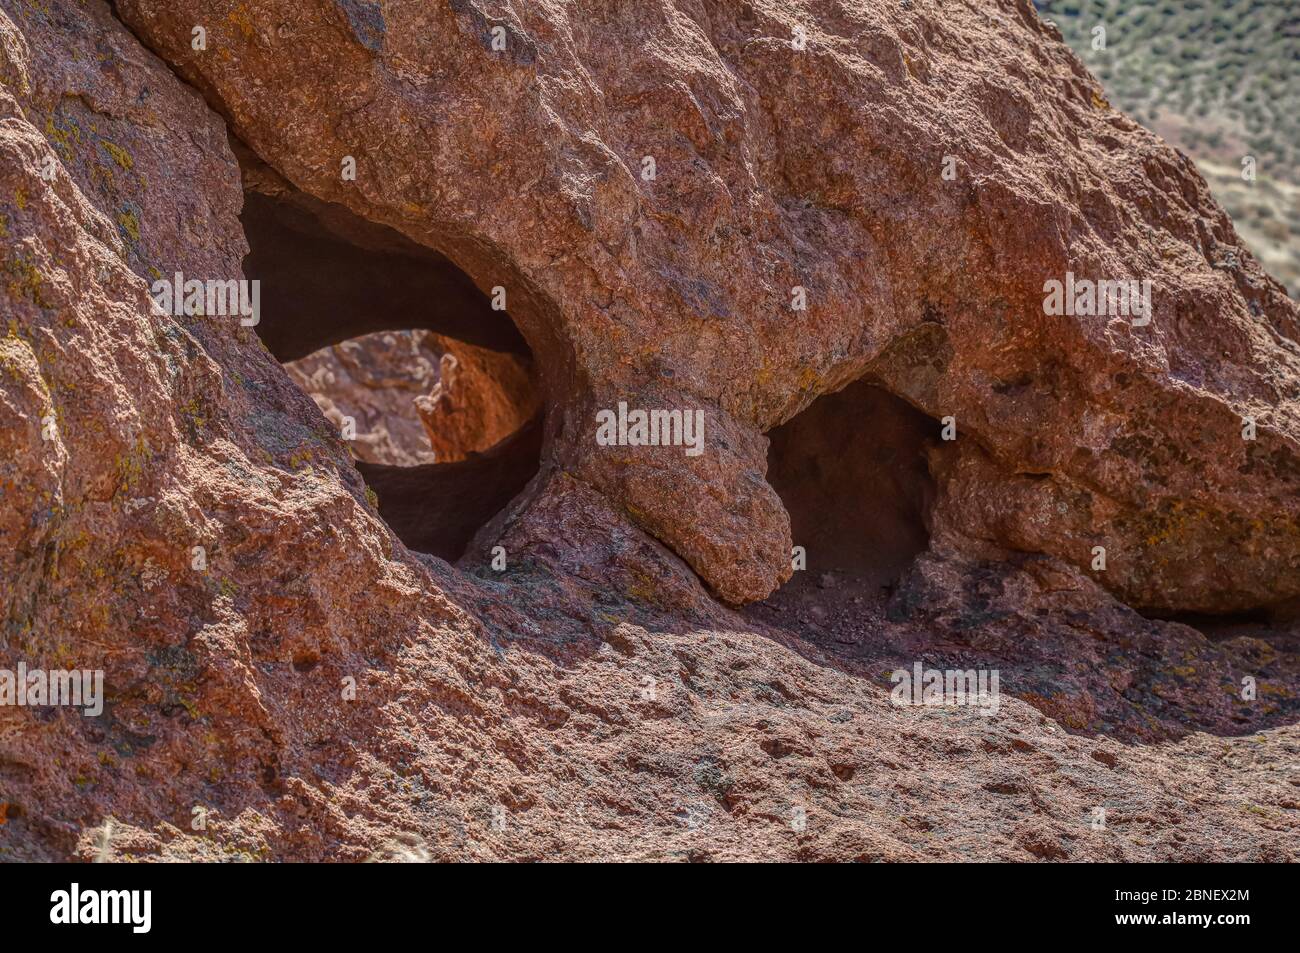 VIRGINIA MOUNTAINS, NEVADA, STATI UNITI - Apr 22, 2020: La Monkey Condos, una formazione rocciosa inquietante di molte piccole grotte nella roccia rossa del deserto, è una Foto Stock